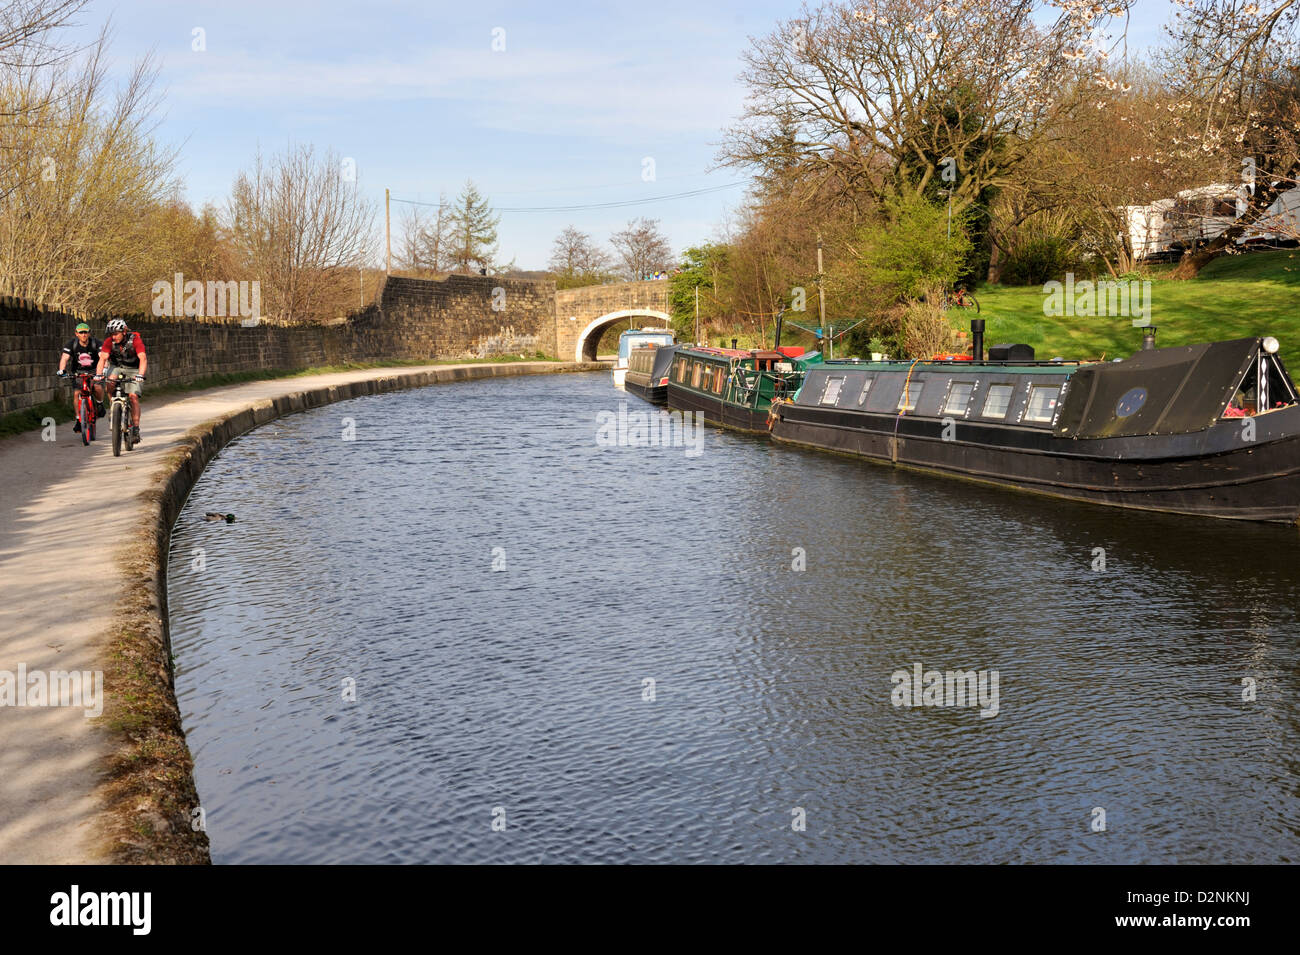 Leeds und Liverpool Canal Kanalboote und Radfahrer Stockfoto